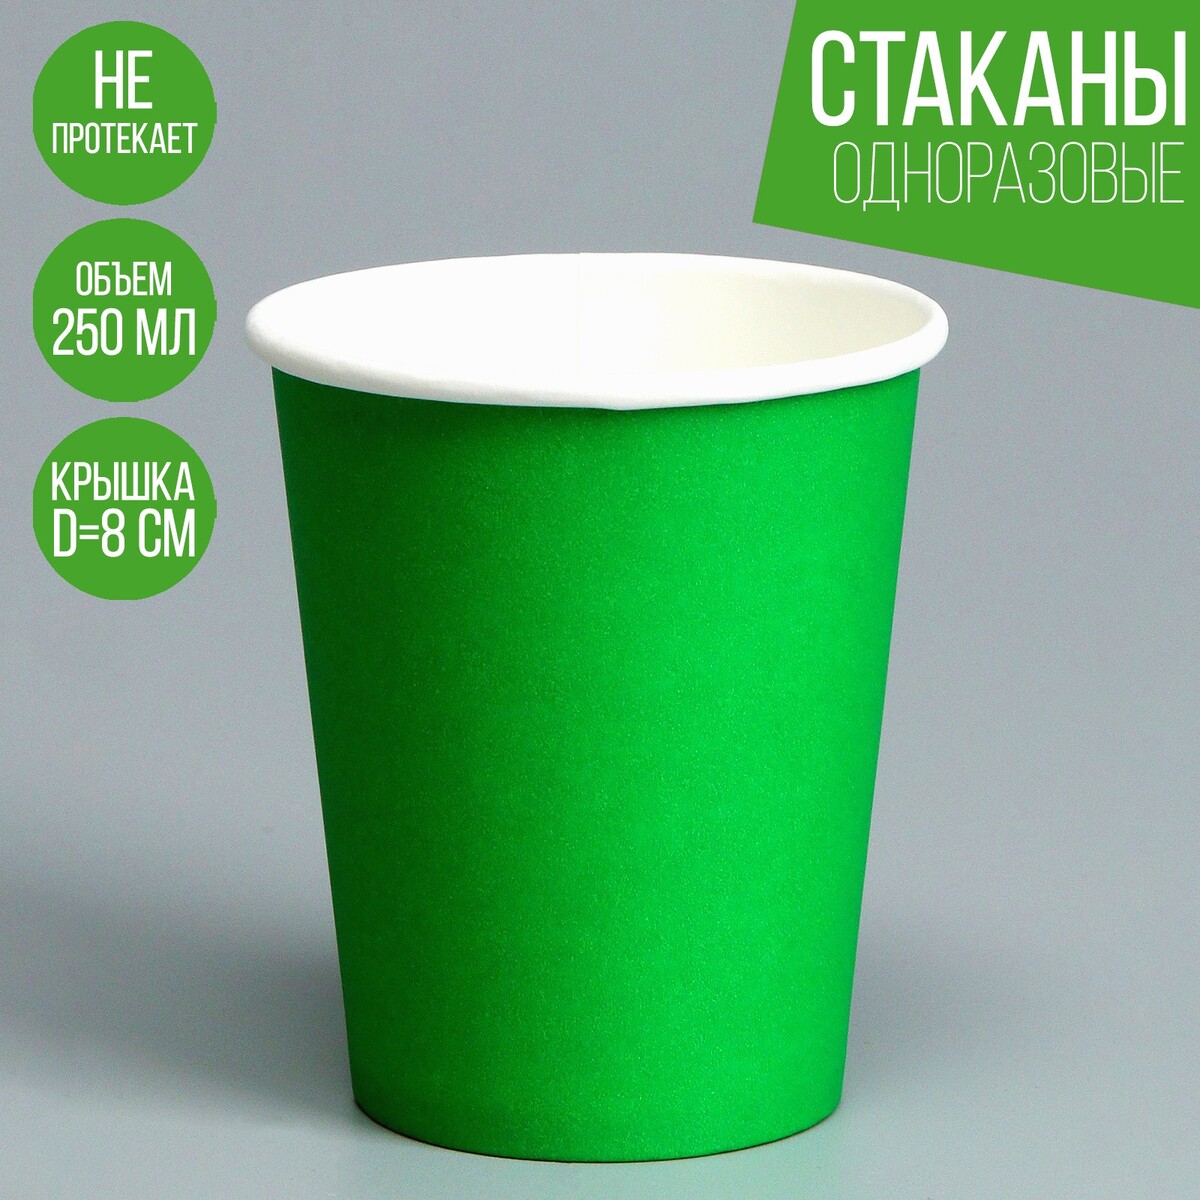 Стакан одноразовый бумажный, однотонный, цвет зеленый, 250 мл, 50 шт стакан 445 мл стекло pasabahce энжой зеленый 520015slbgr